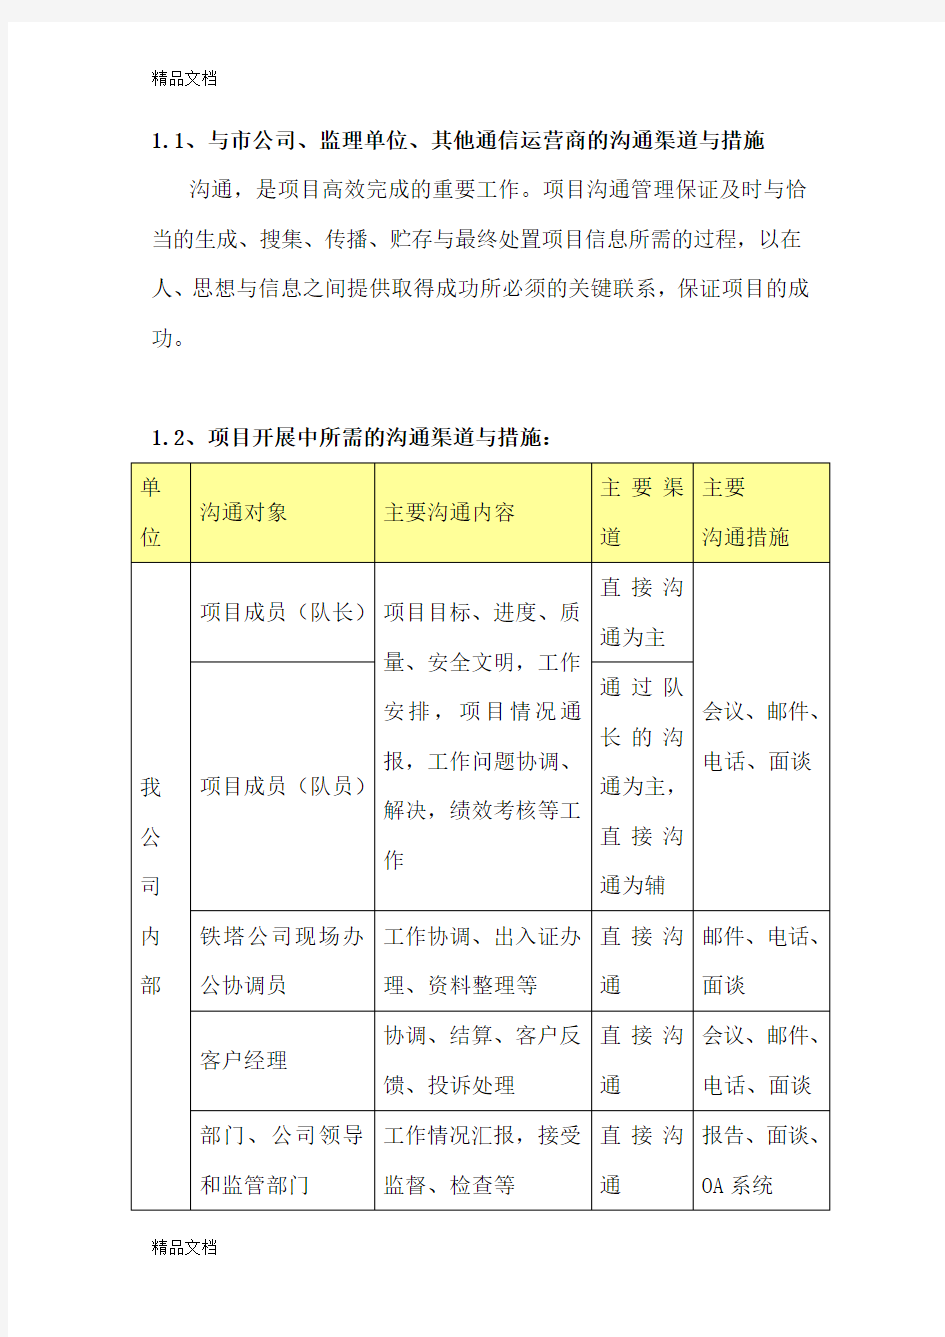 中国铁塔工程建设技术服务措施教学内容